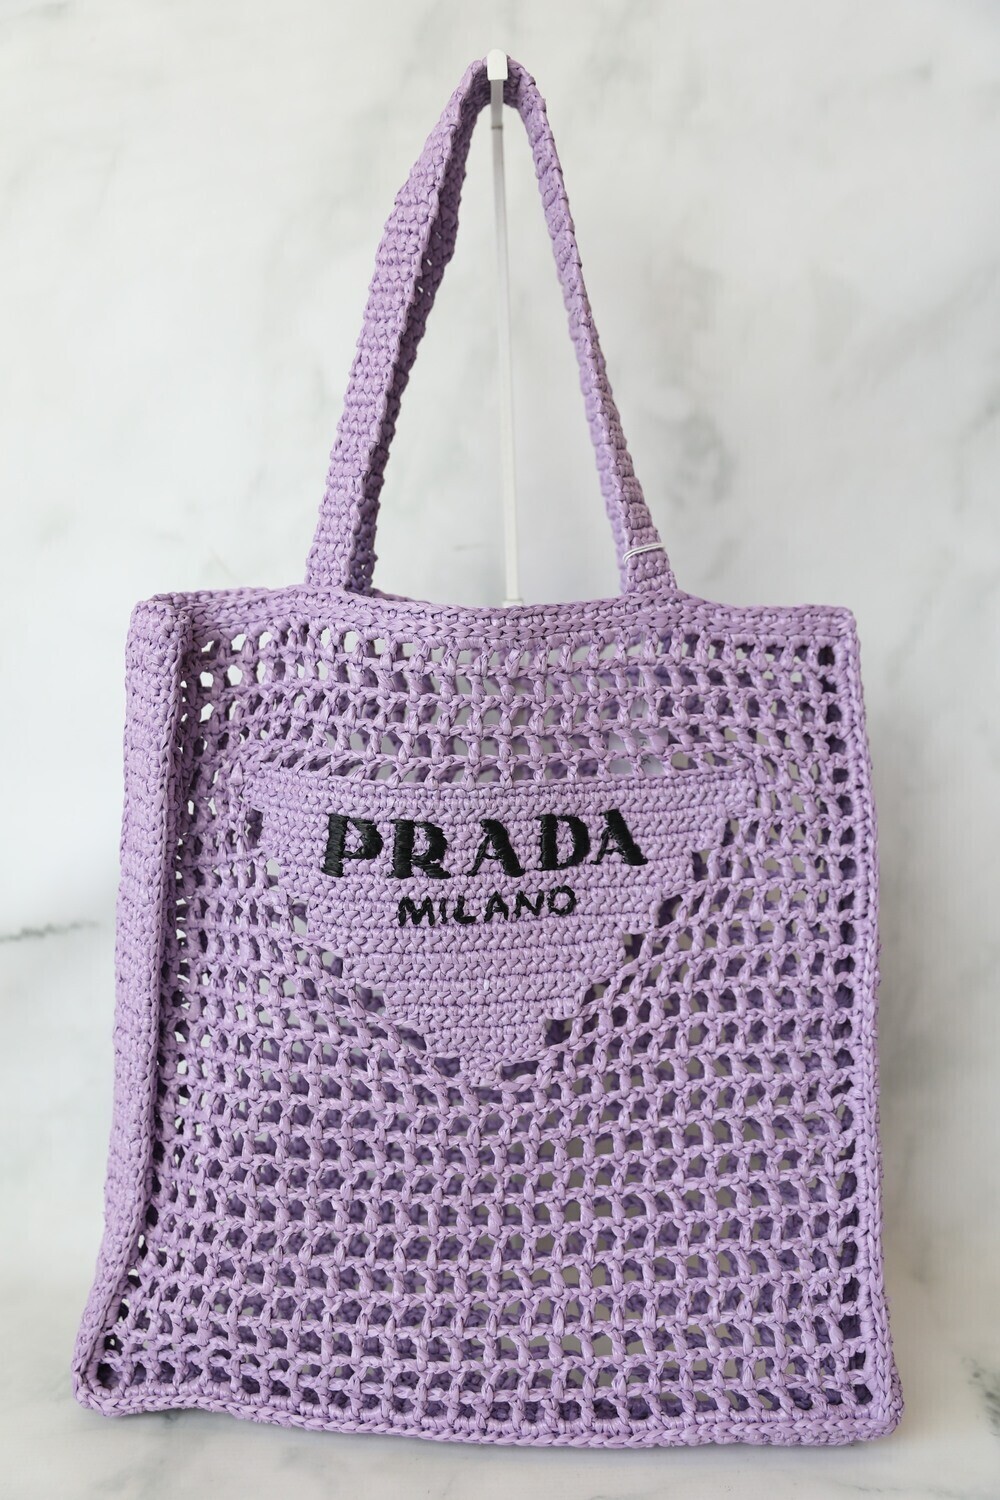 Prada Raffia Tote, Purple Open Weave, New in Dustbag MA001